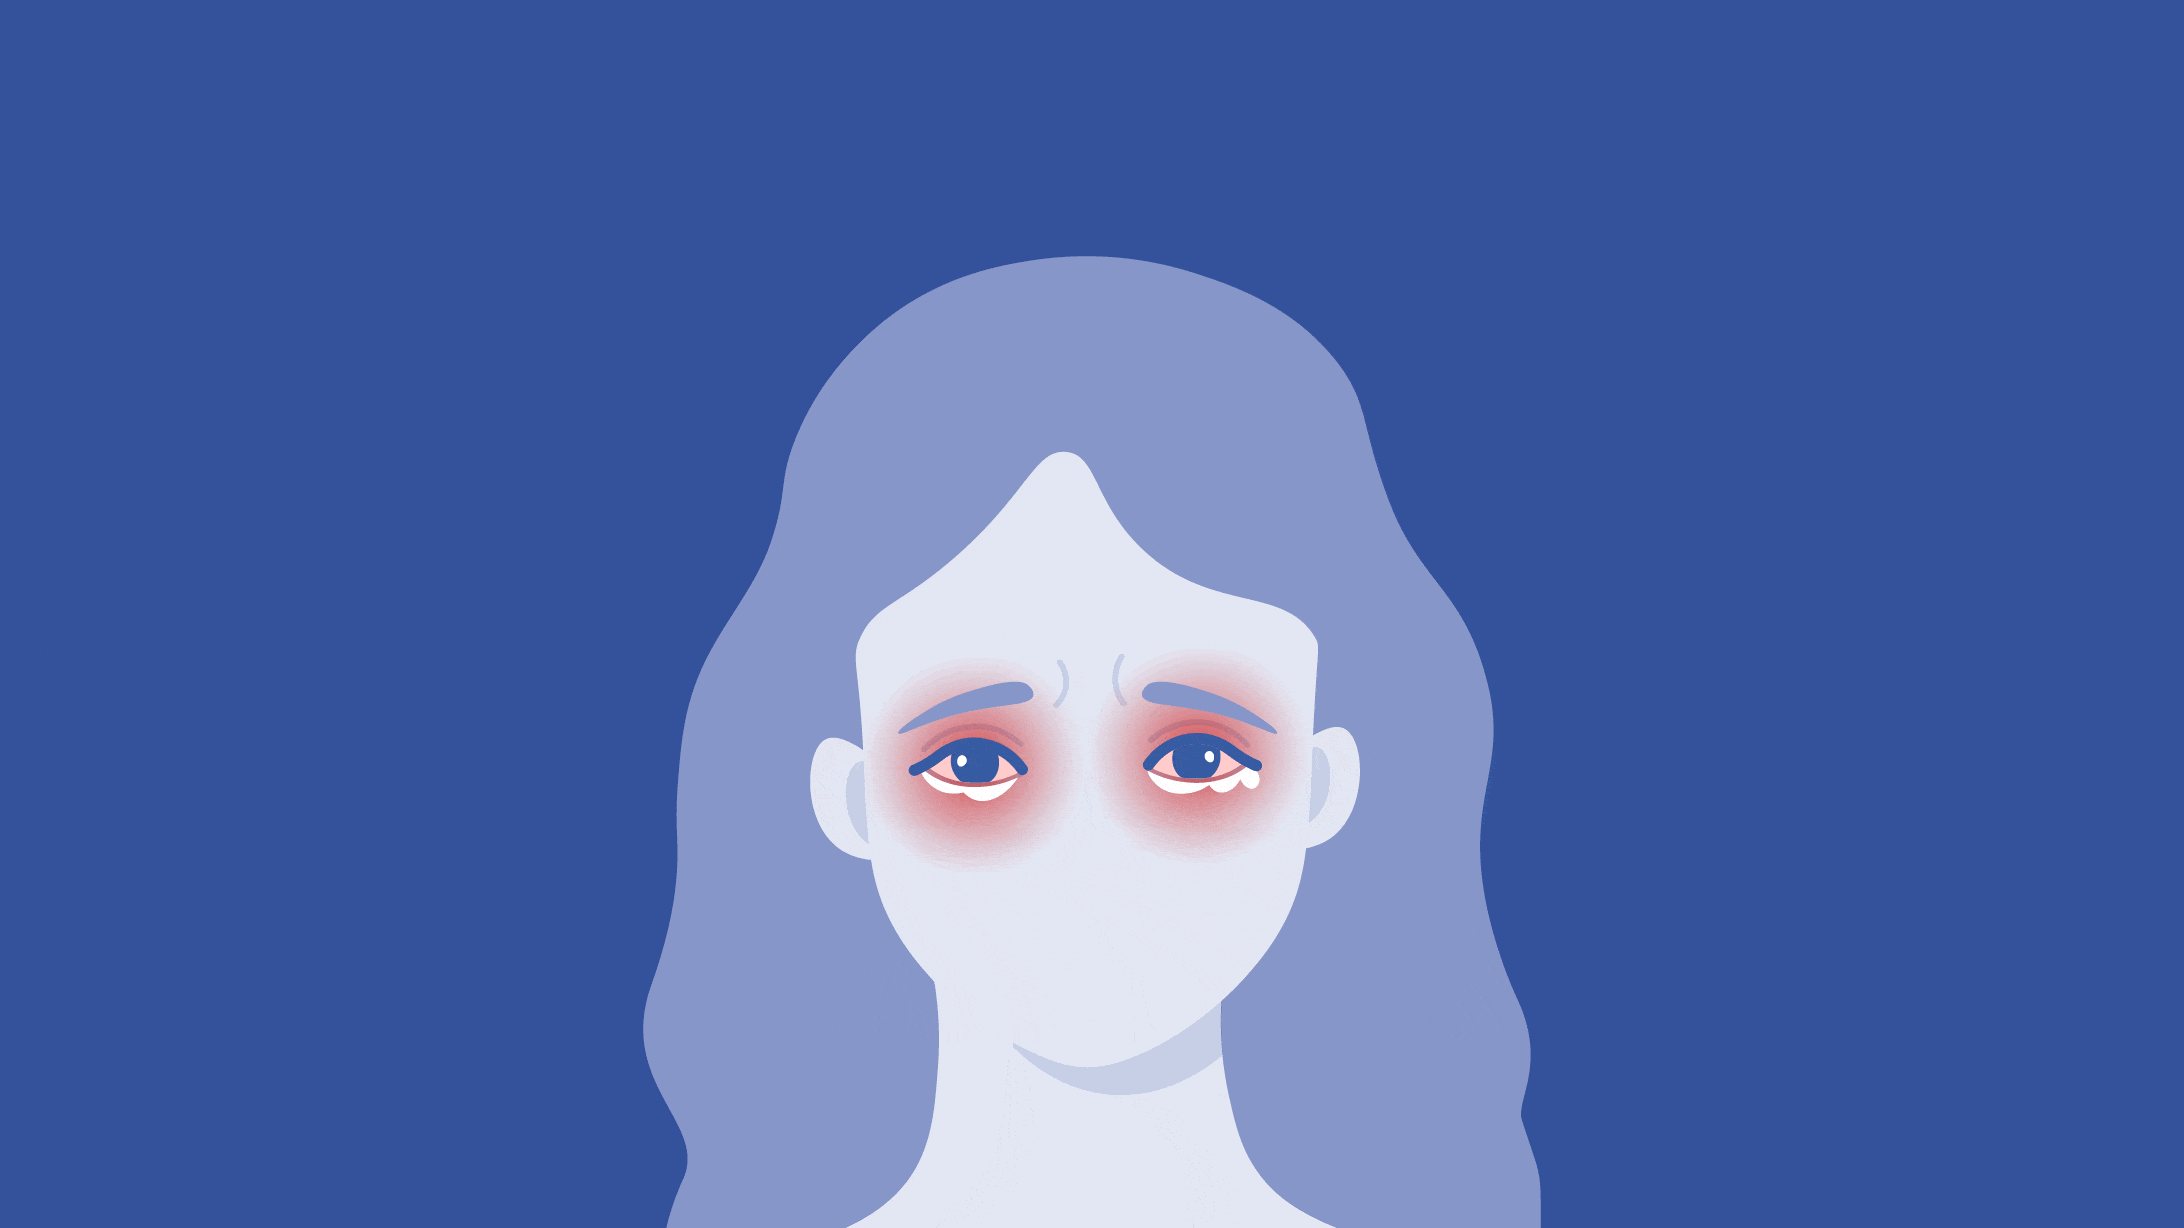 Illustrierter Frauenkopf in Blau mit rot umrahmten, tränenden Augen